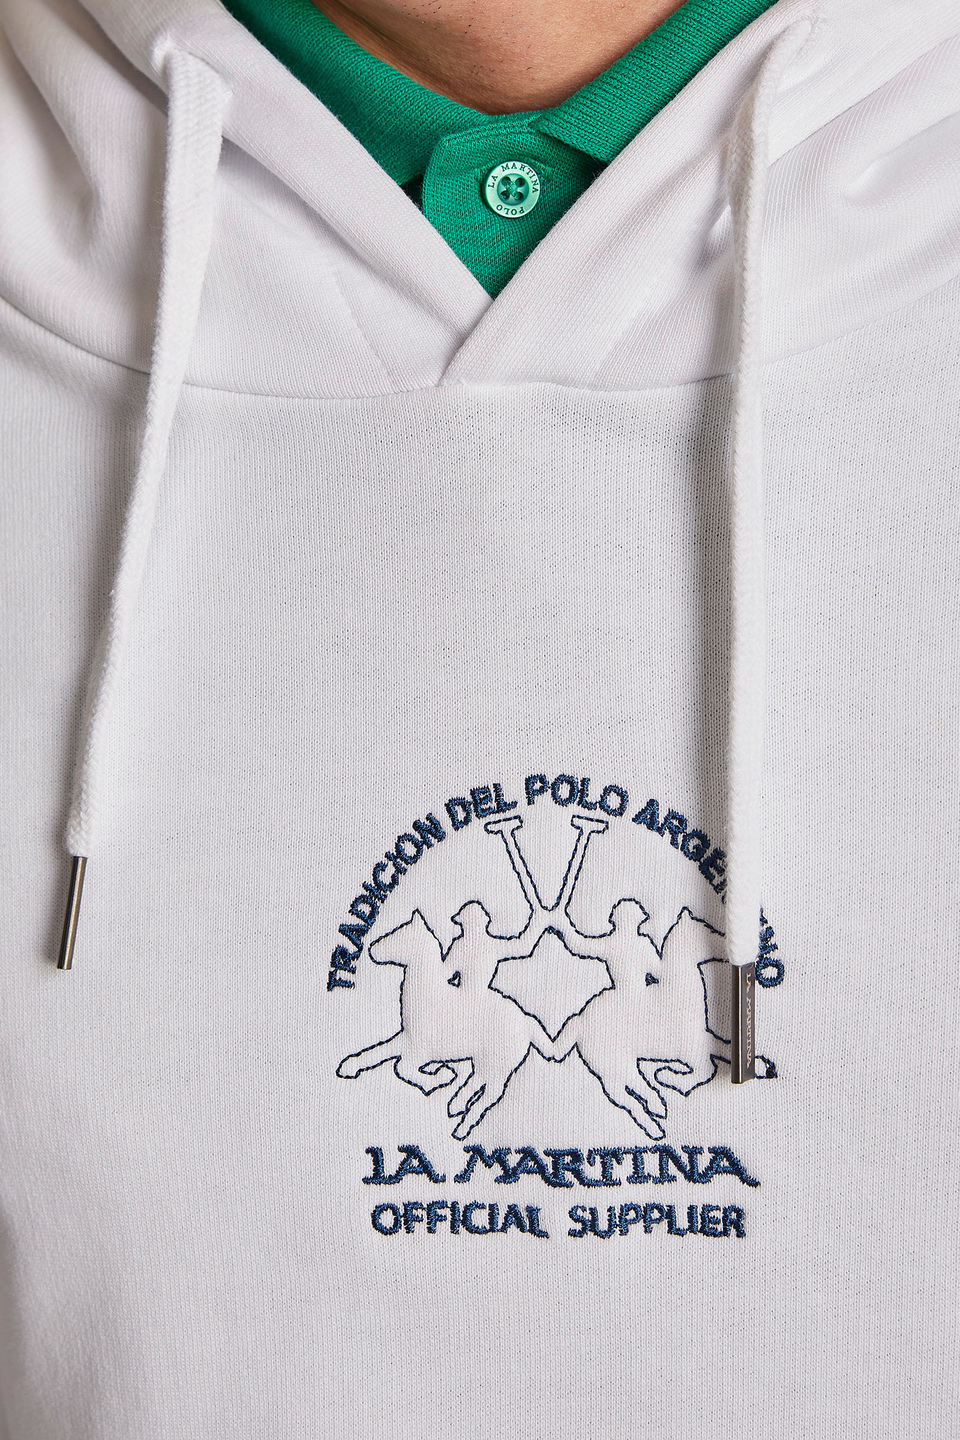 Men's comfort-fit 100% cotton hoodie - La Martina - Official Online Shop